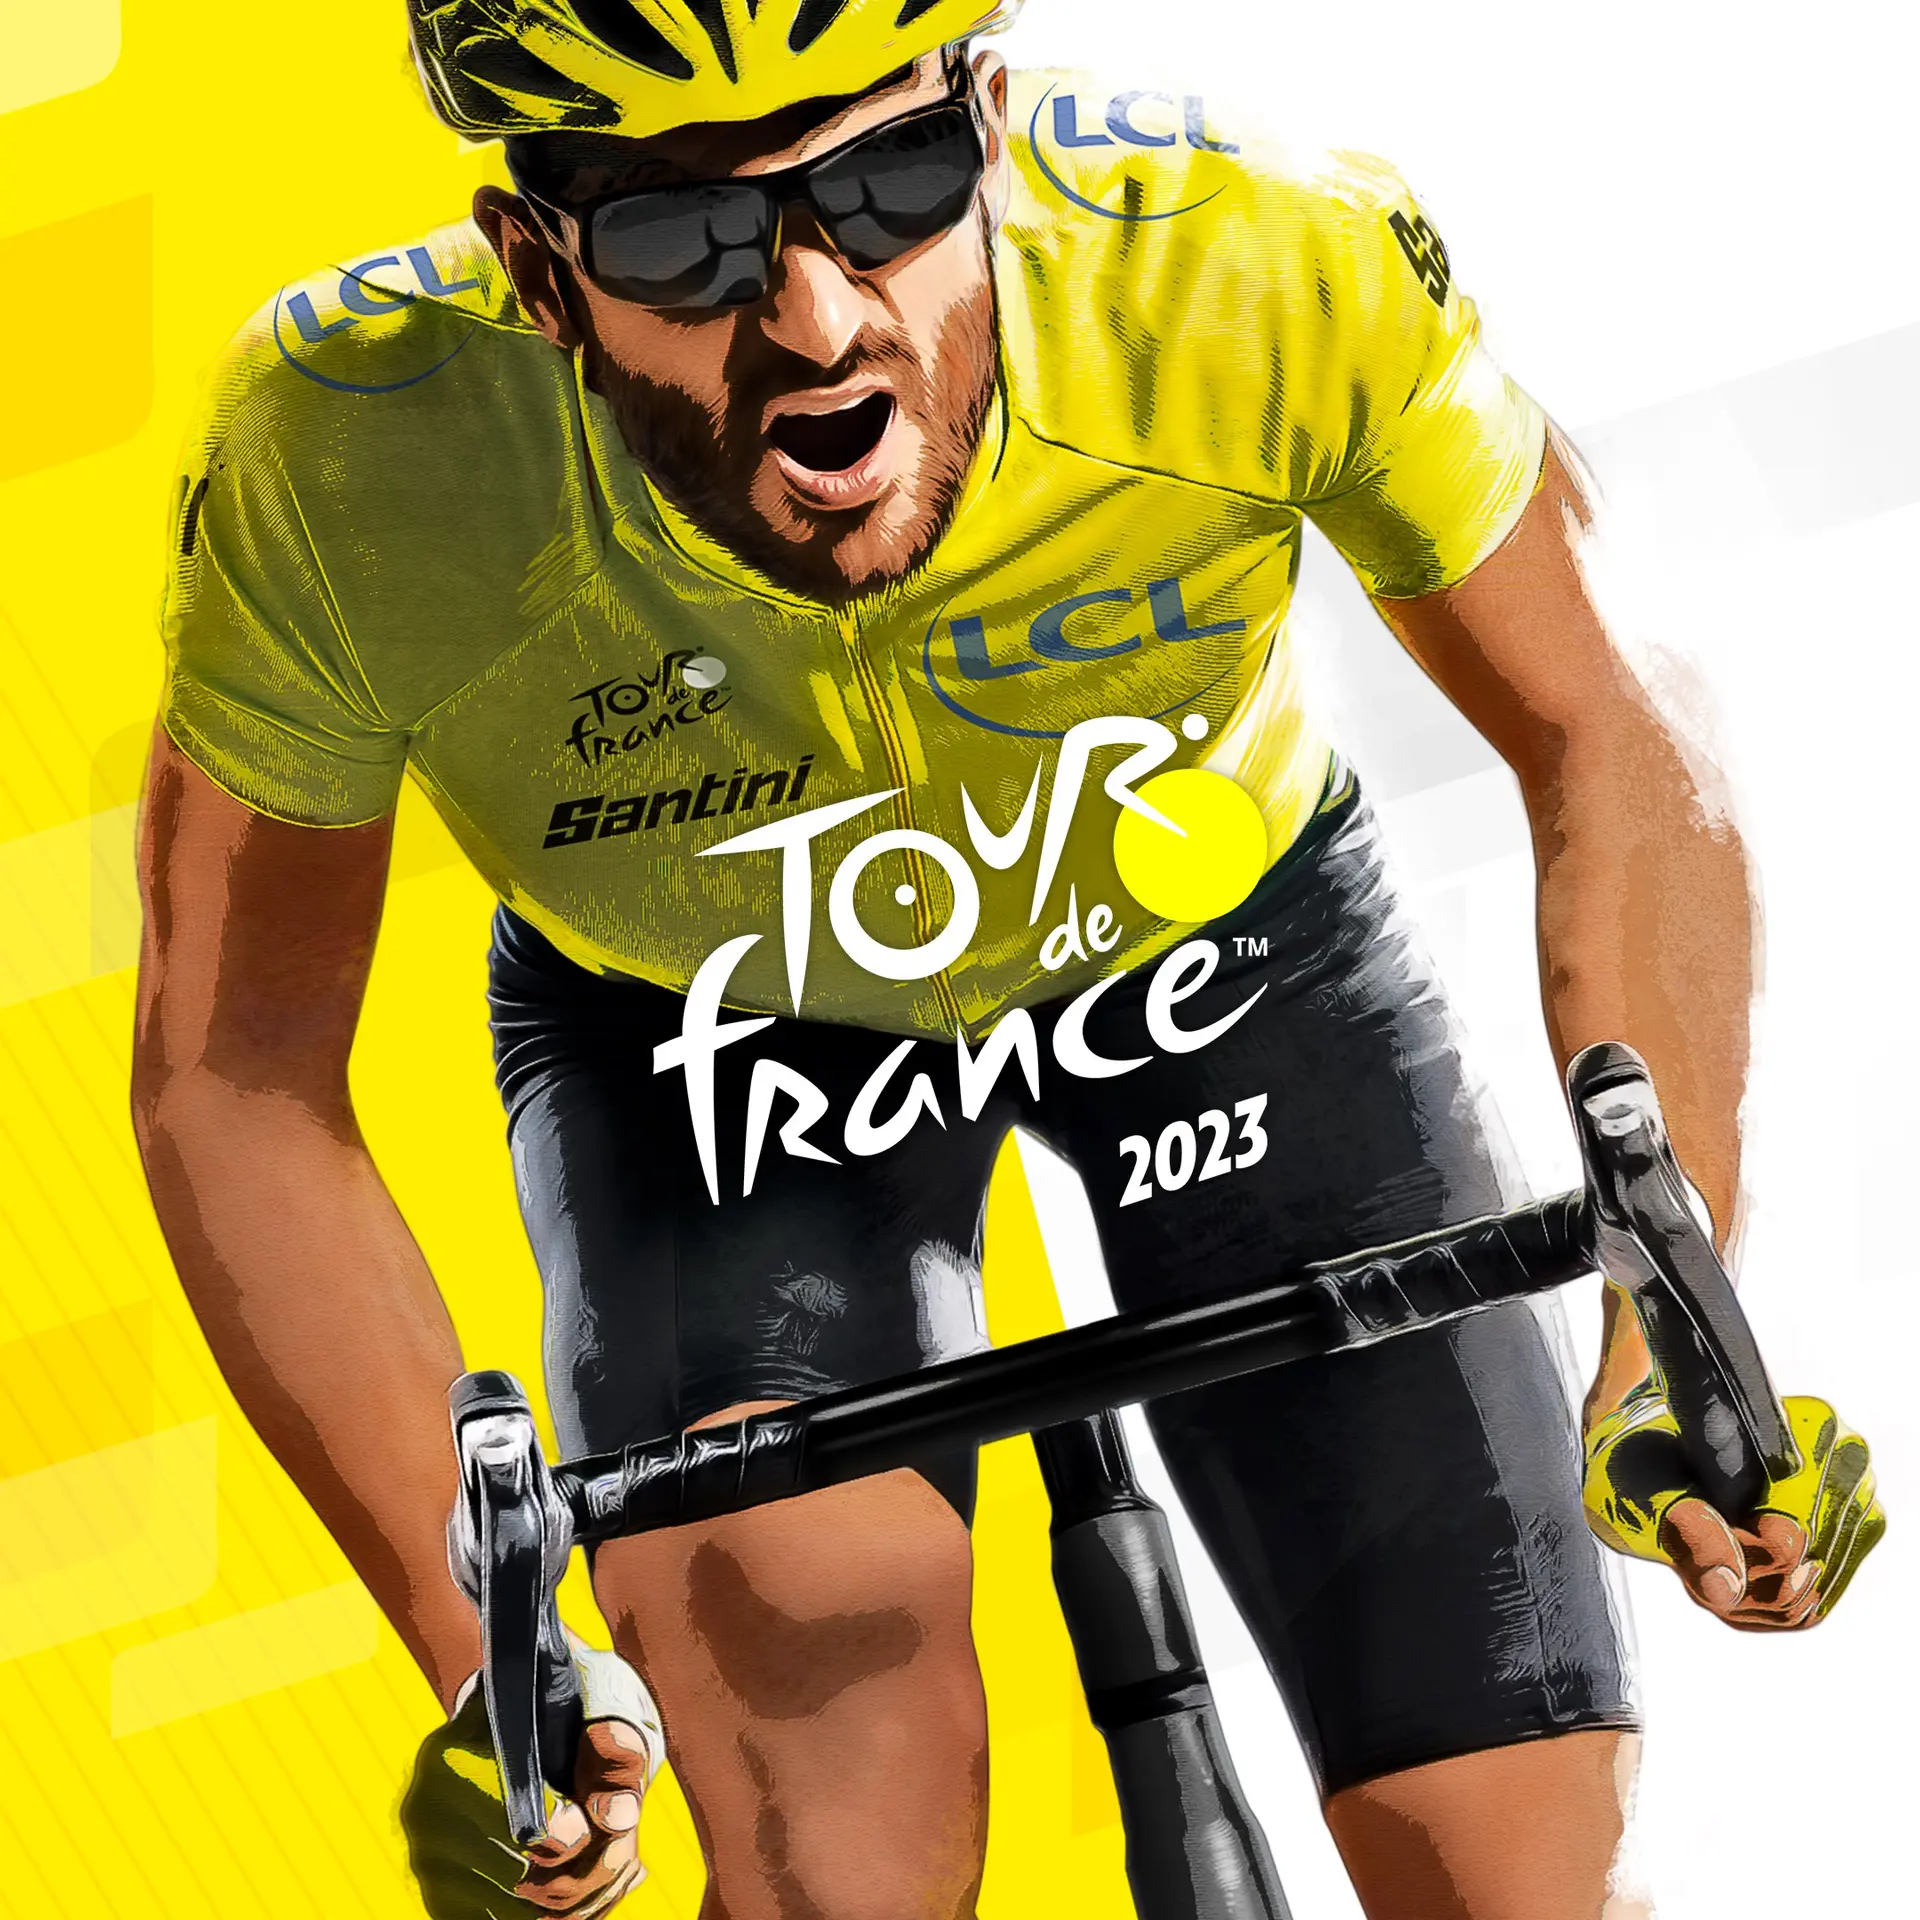 Tour de France 2023 (Xbox Games US)